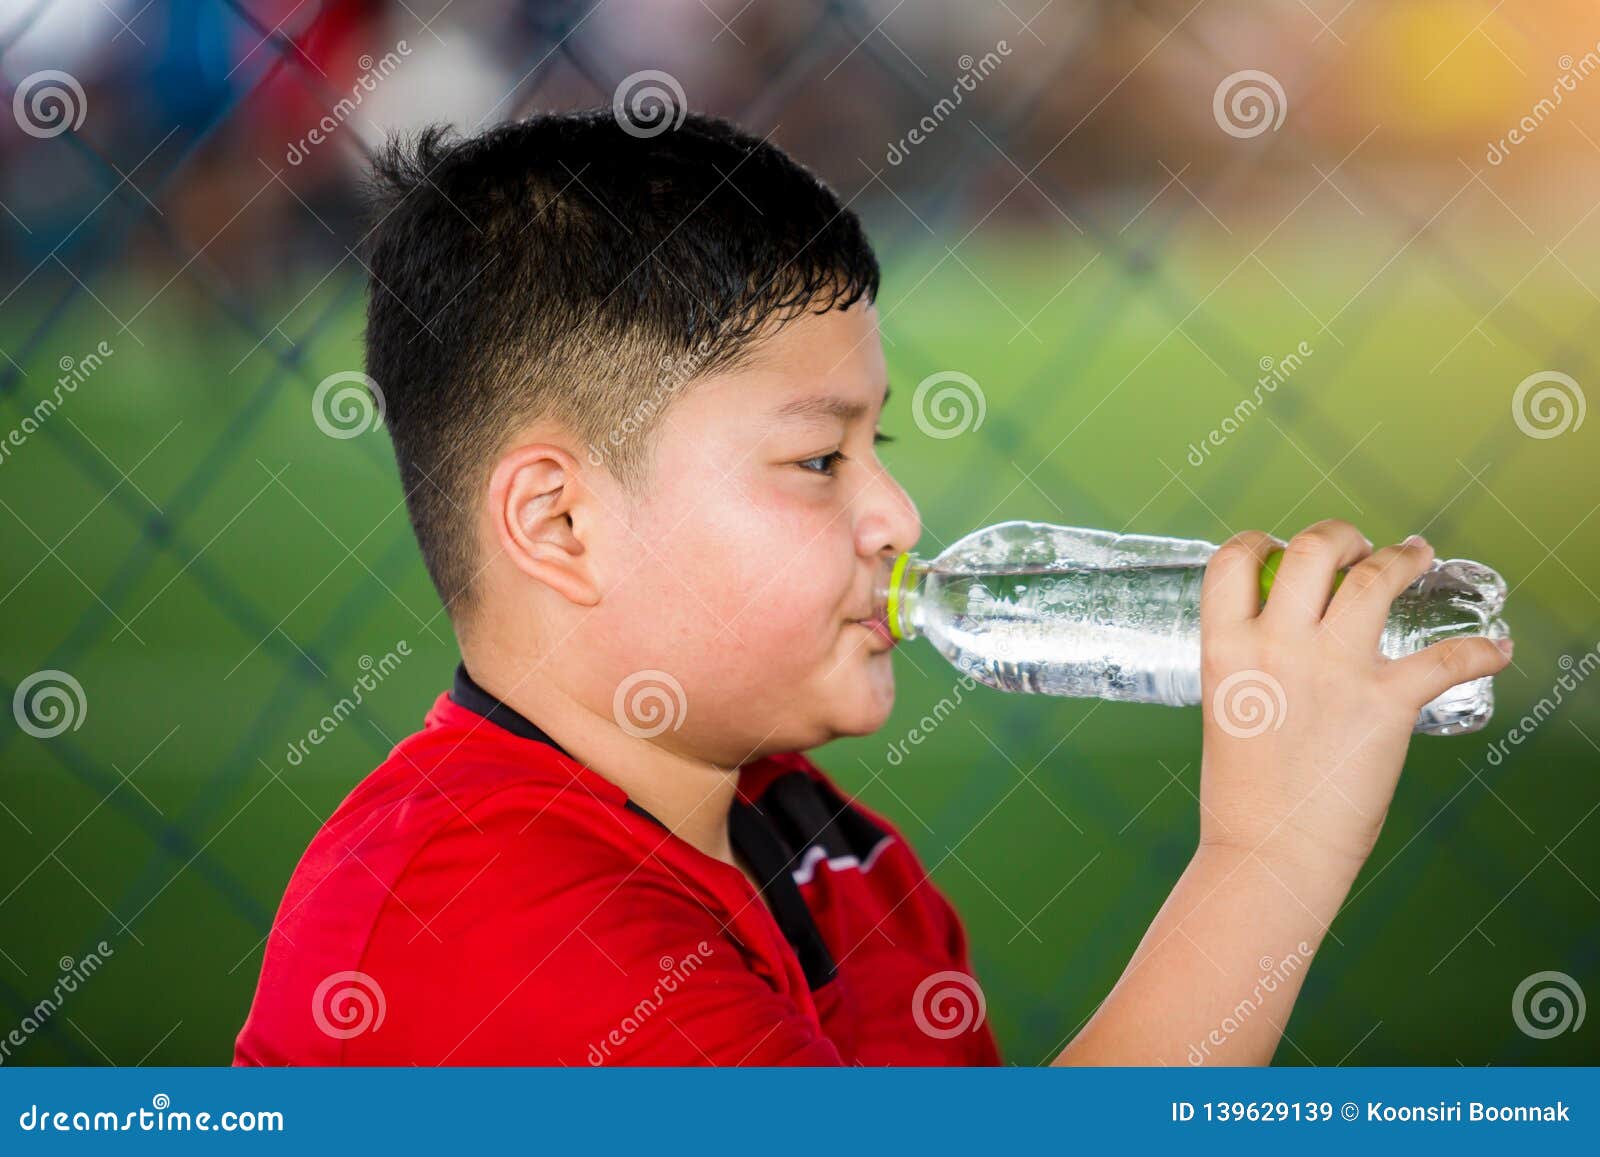 https://thumbs.dreamstime.com/z/portrait-teenage-boy-drinking-water-soccer-field-139629139.jpg